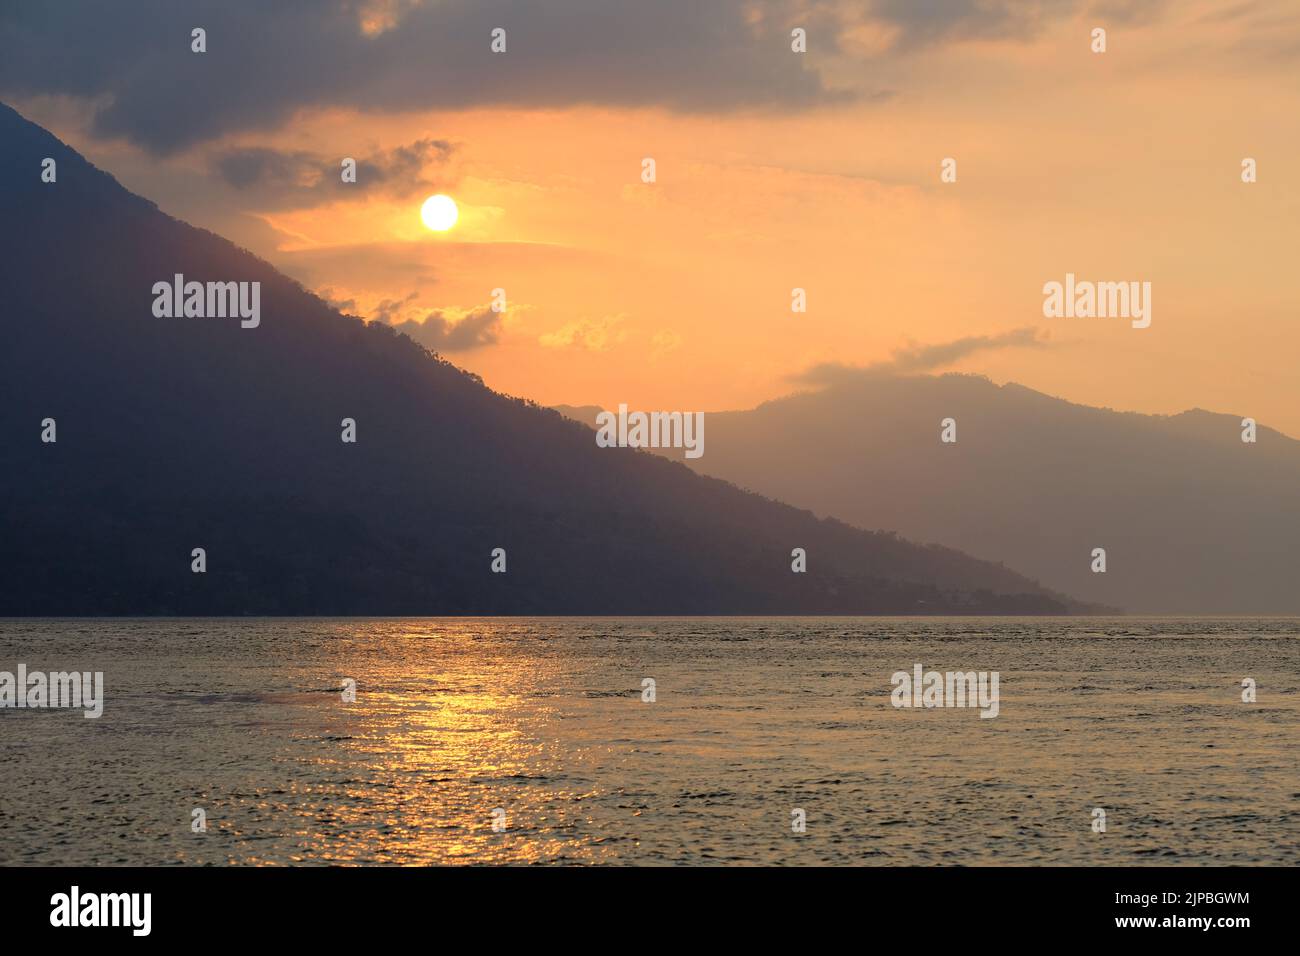 Indonesia Alor Island - Paisaje marino con montaña volcánica al atardecer Foto de stock